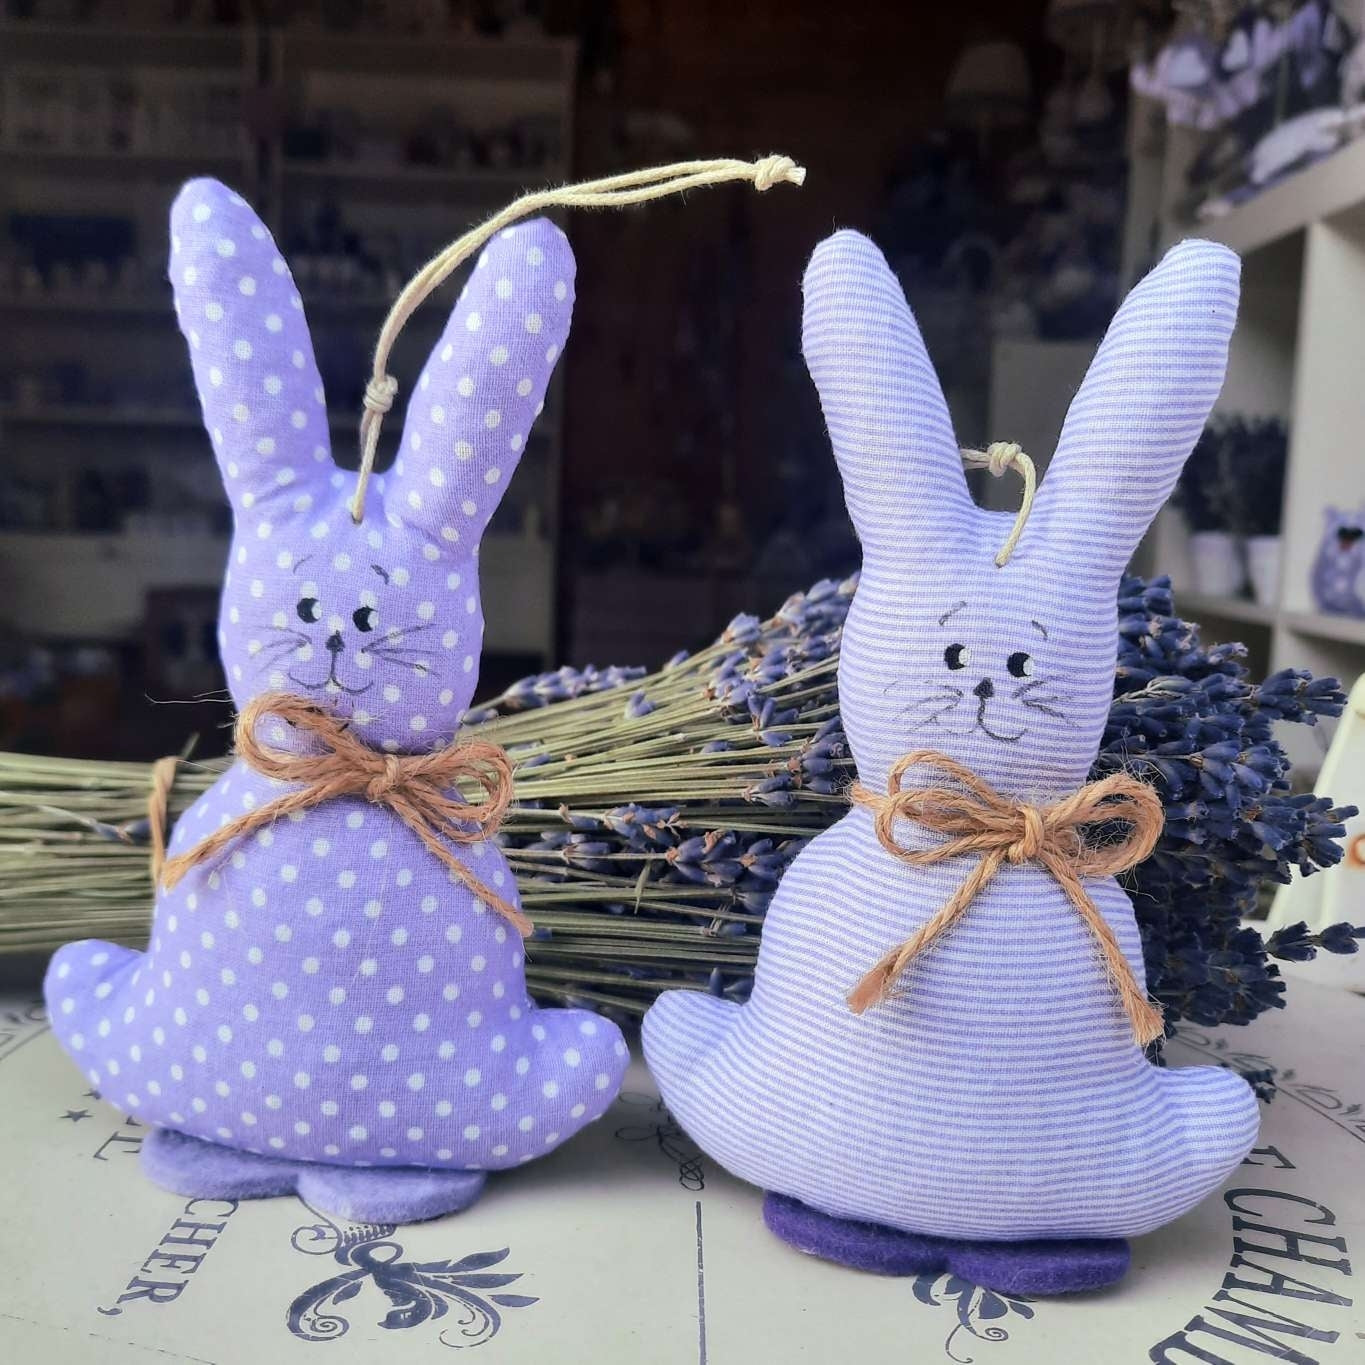 coniglio in stoffa, coniglietto in stoffa, coniglio per bomboniere, sacchetti lavanda a forma di coniglio, idee regalo originali, idee regalo fatte a mano, idee regalo Pasqua, prodotti alla lavanda vendita online 